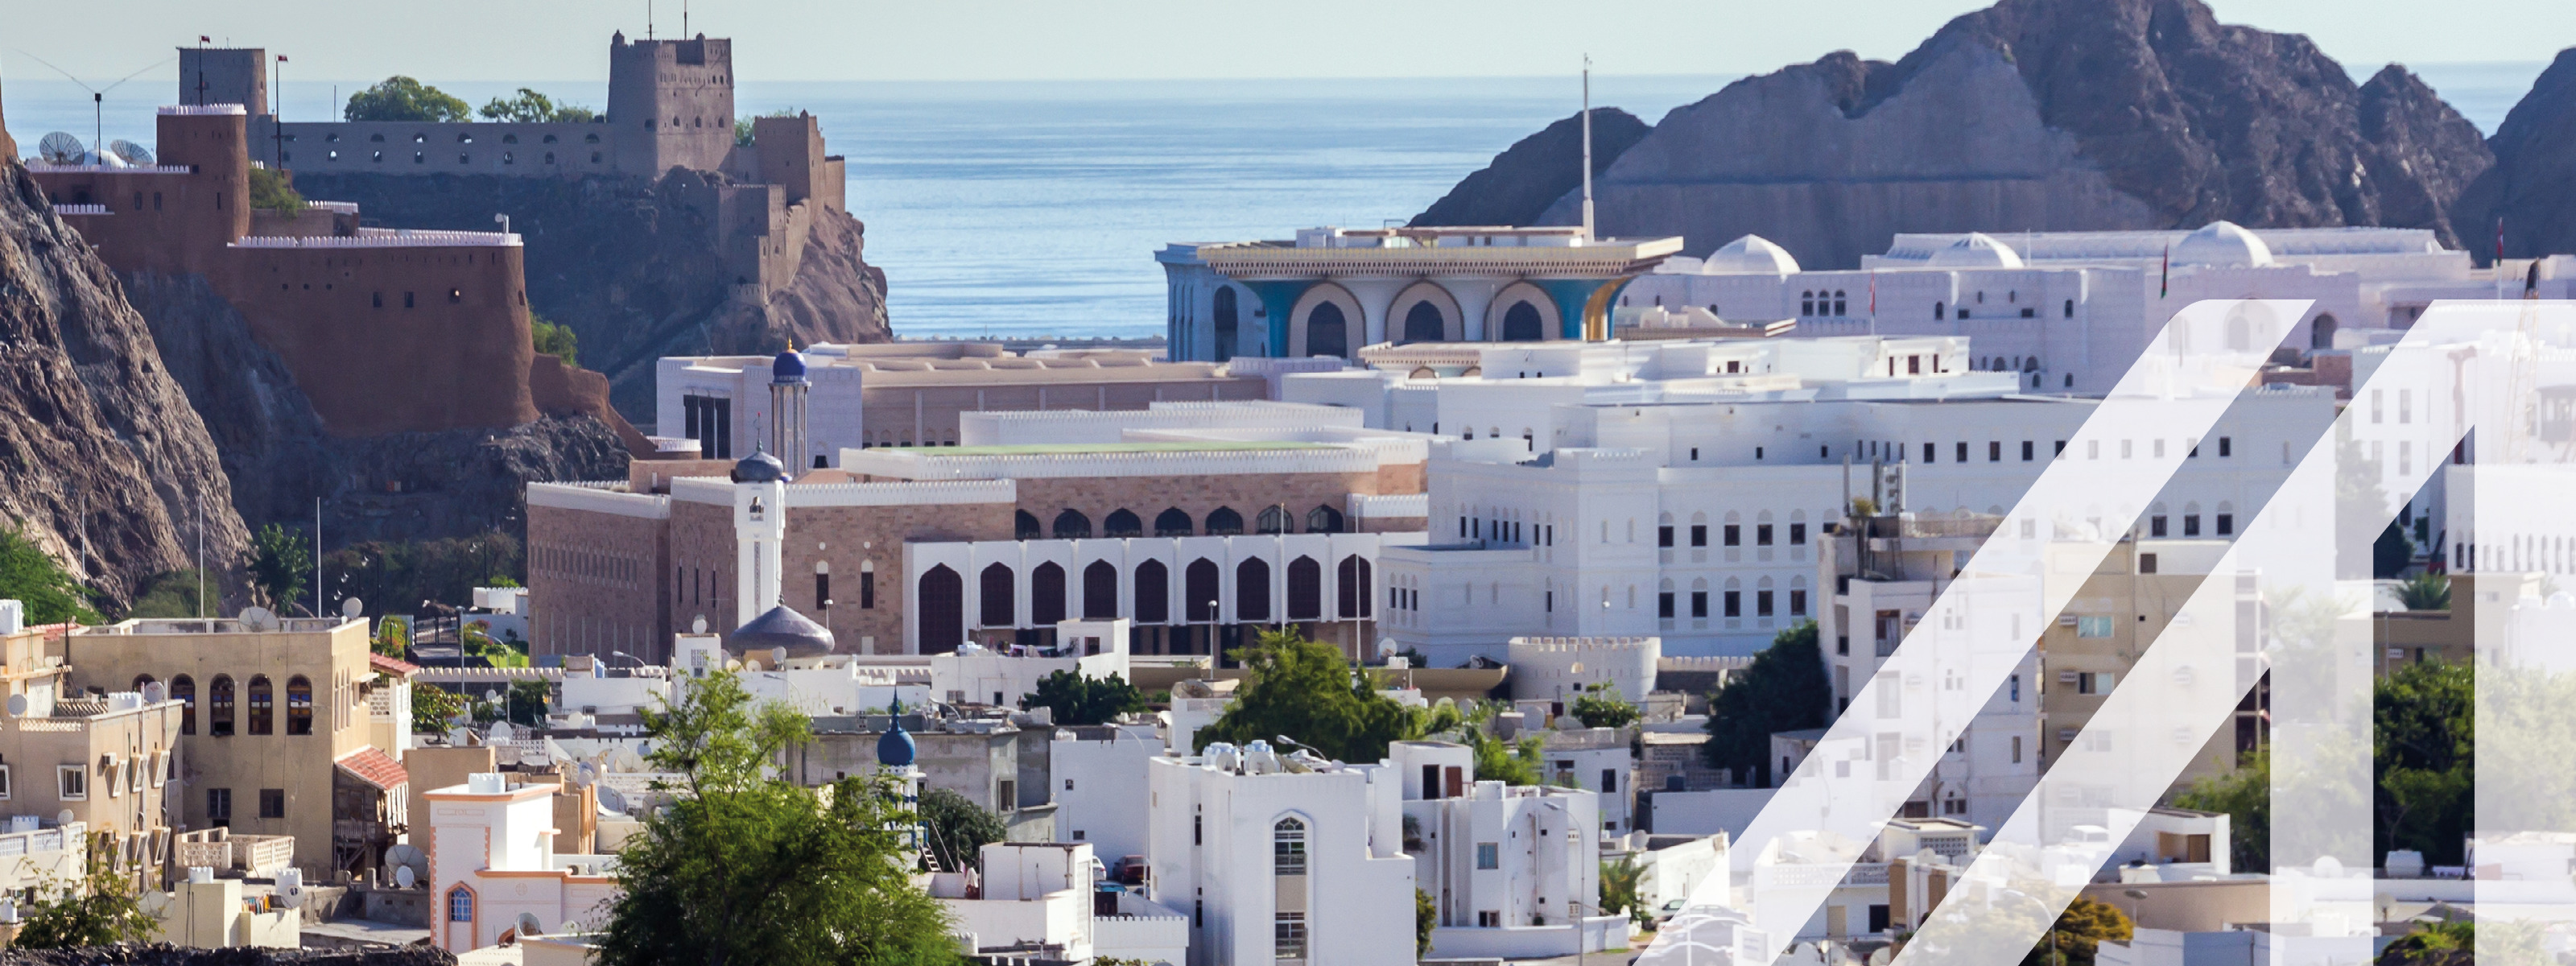 Historische Aldstadt von Maskat mit weißen orientalischen Häusern und einer historischen Festung links im Bild. Im Hintergrund sieht man den Golf von Oman und einen Berg. 
